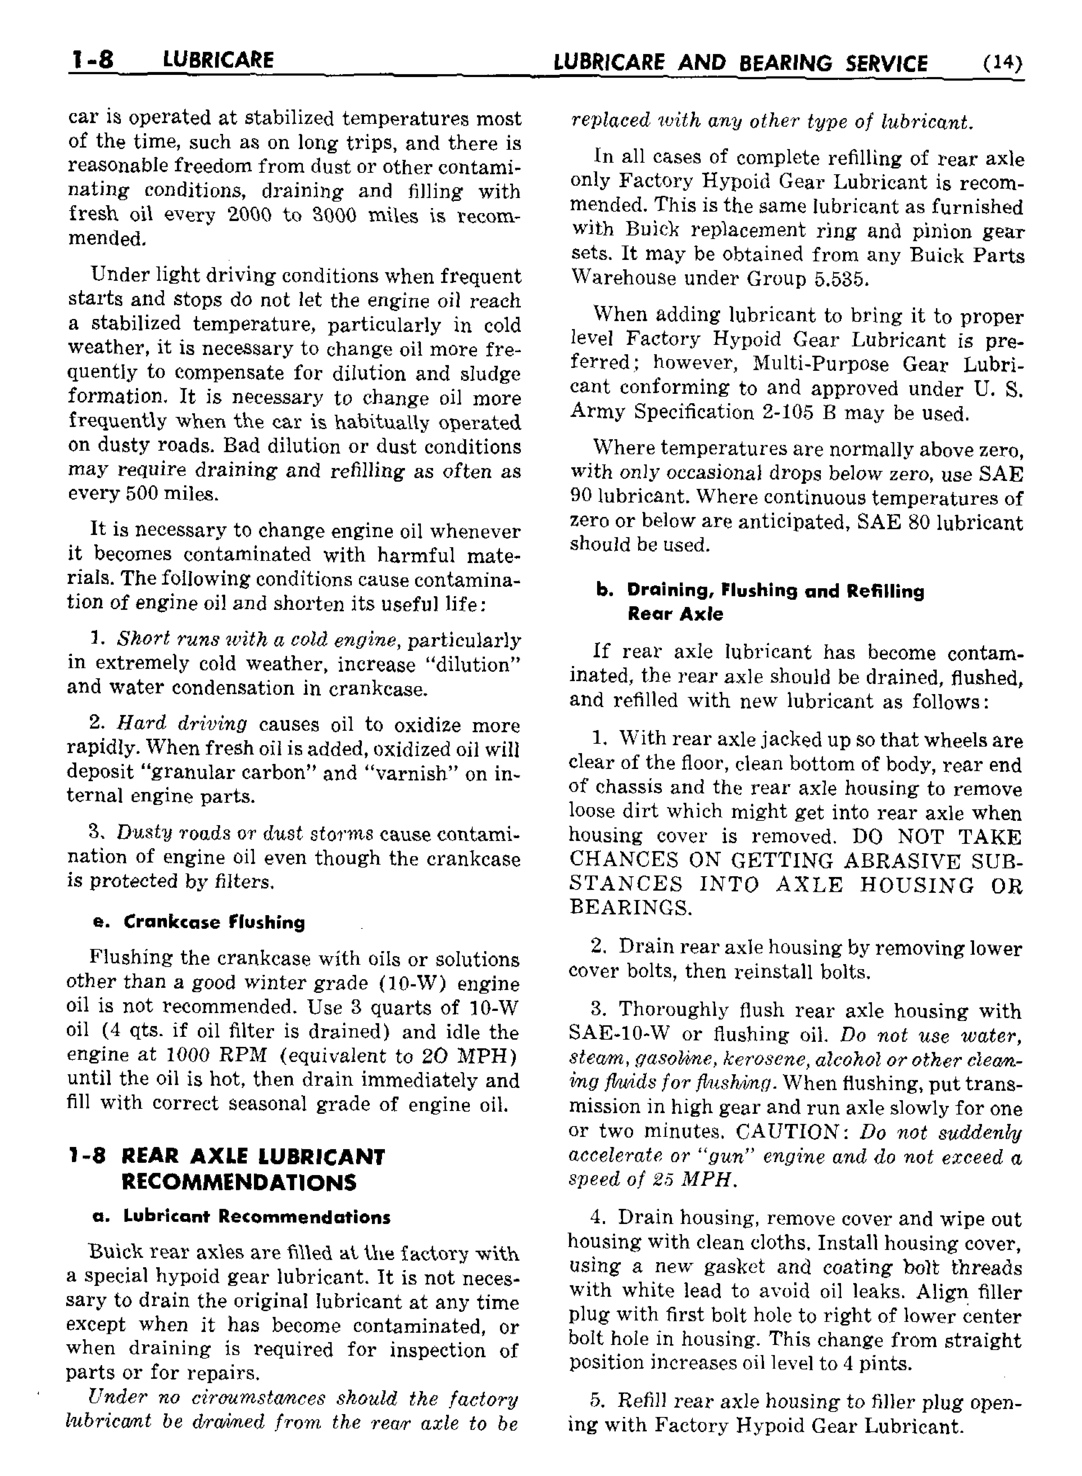 n_02 1950 Buick Shop Manual - Lubricare-008-008.jpg